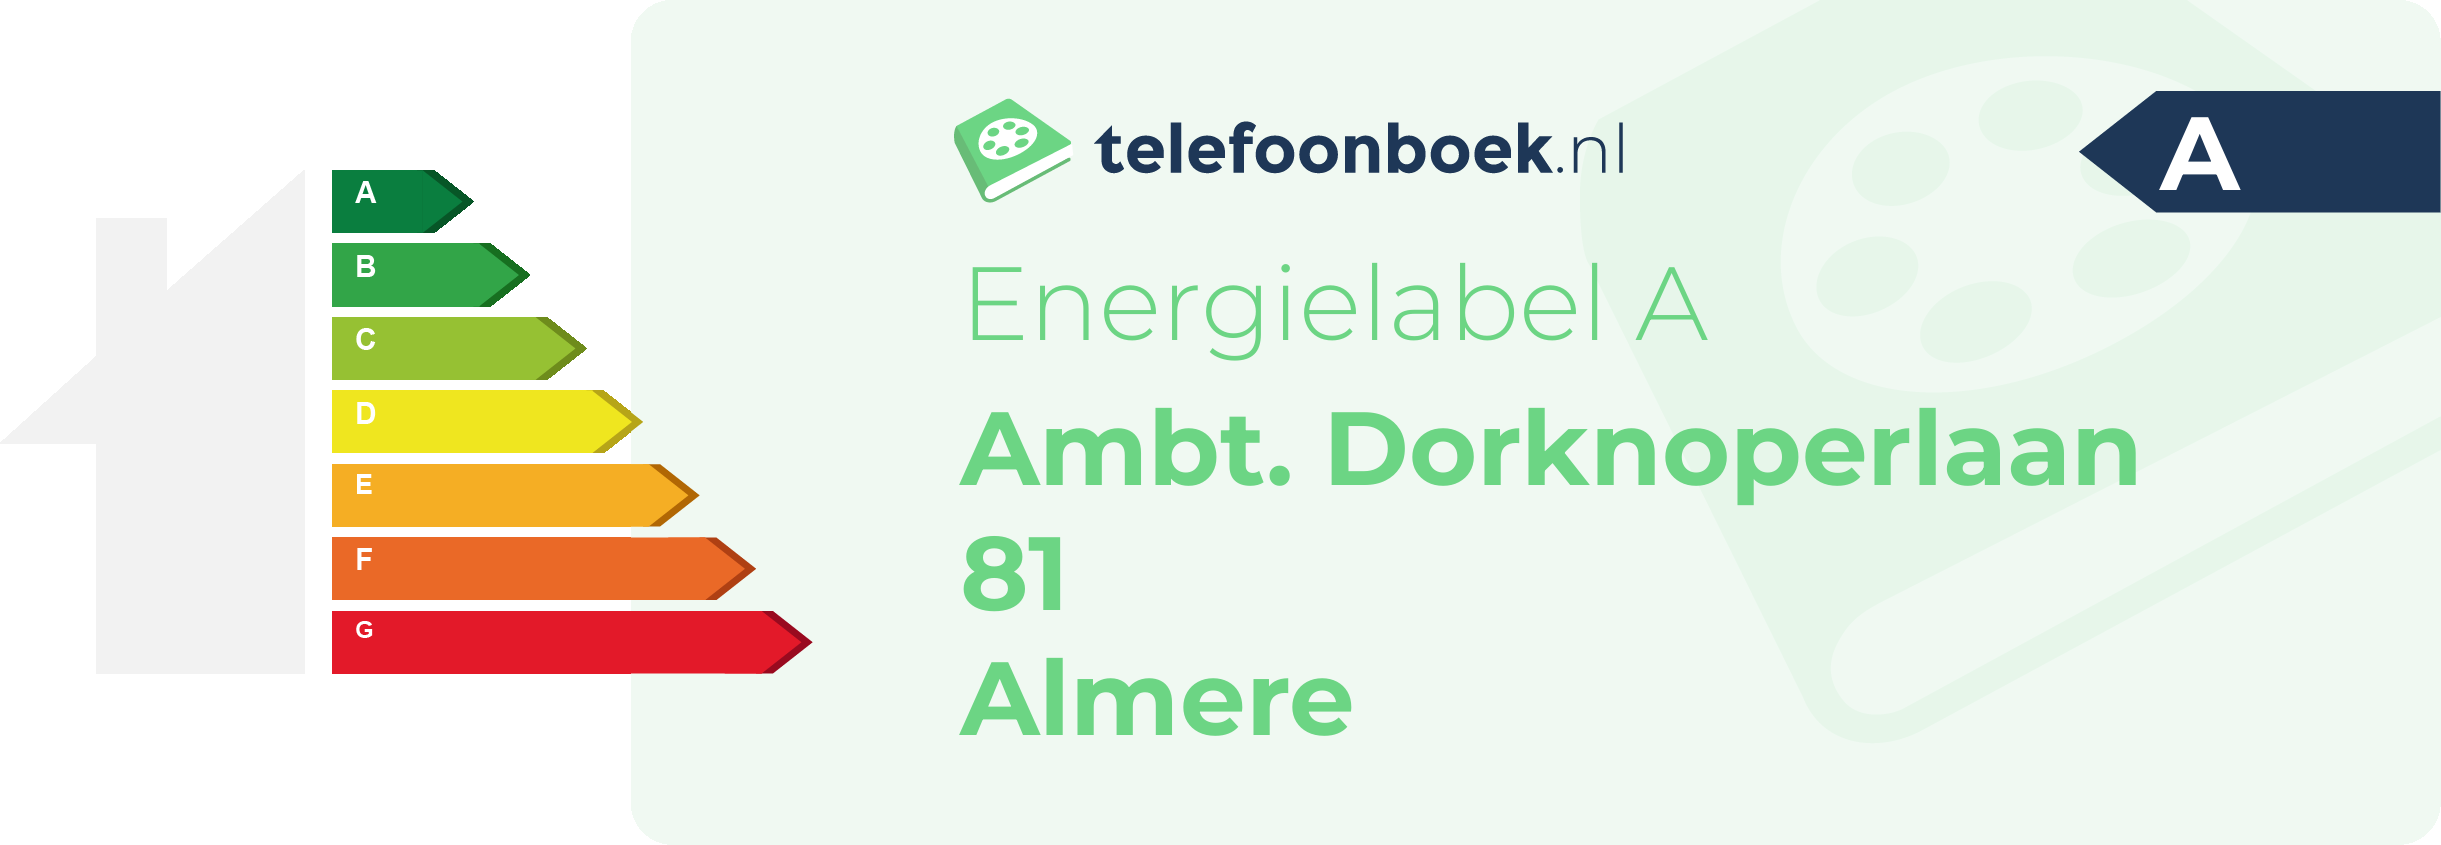 Energielabel Ambt. Dorknoperlaan 81 Almere